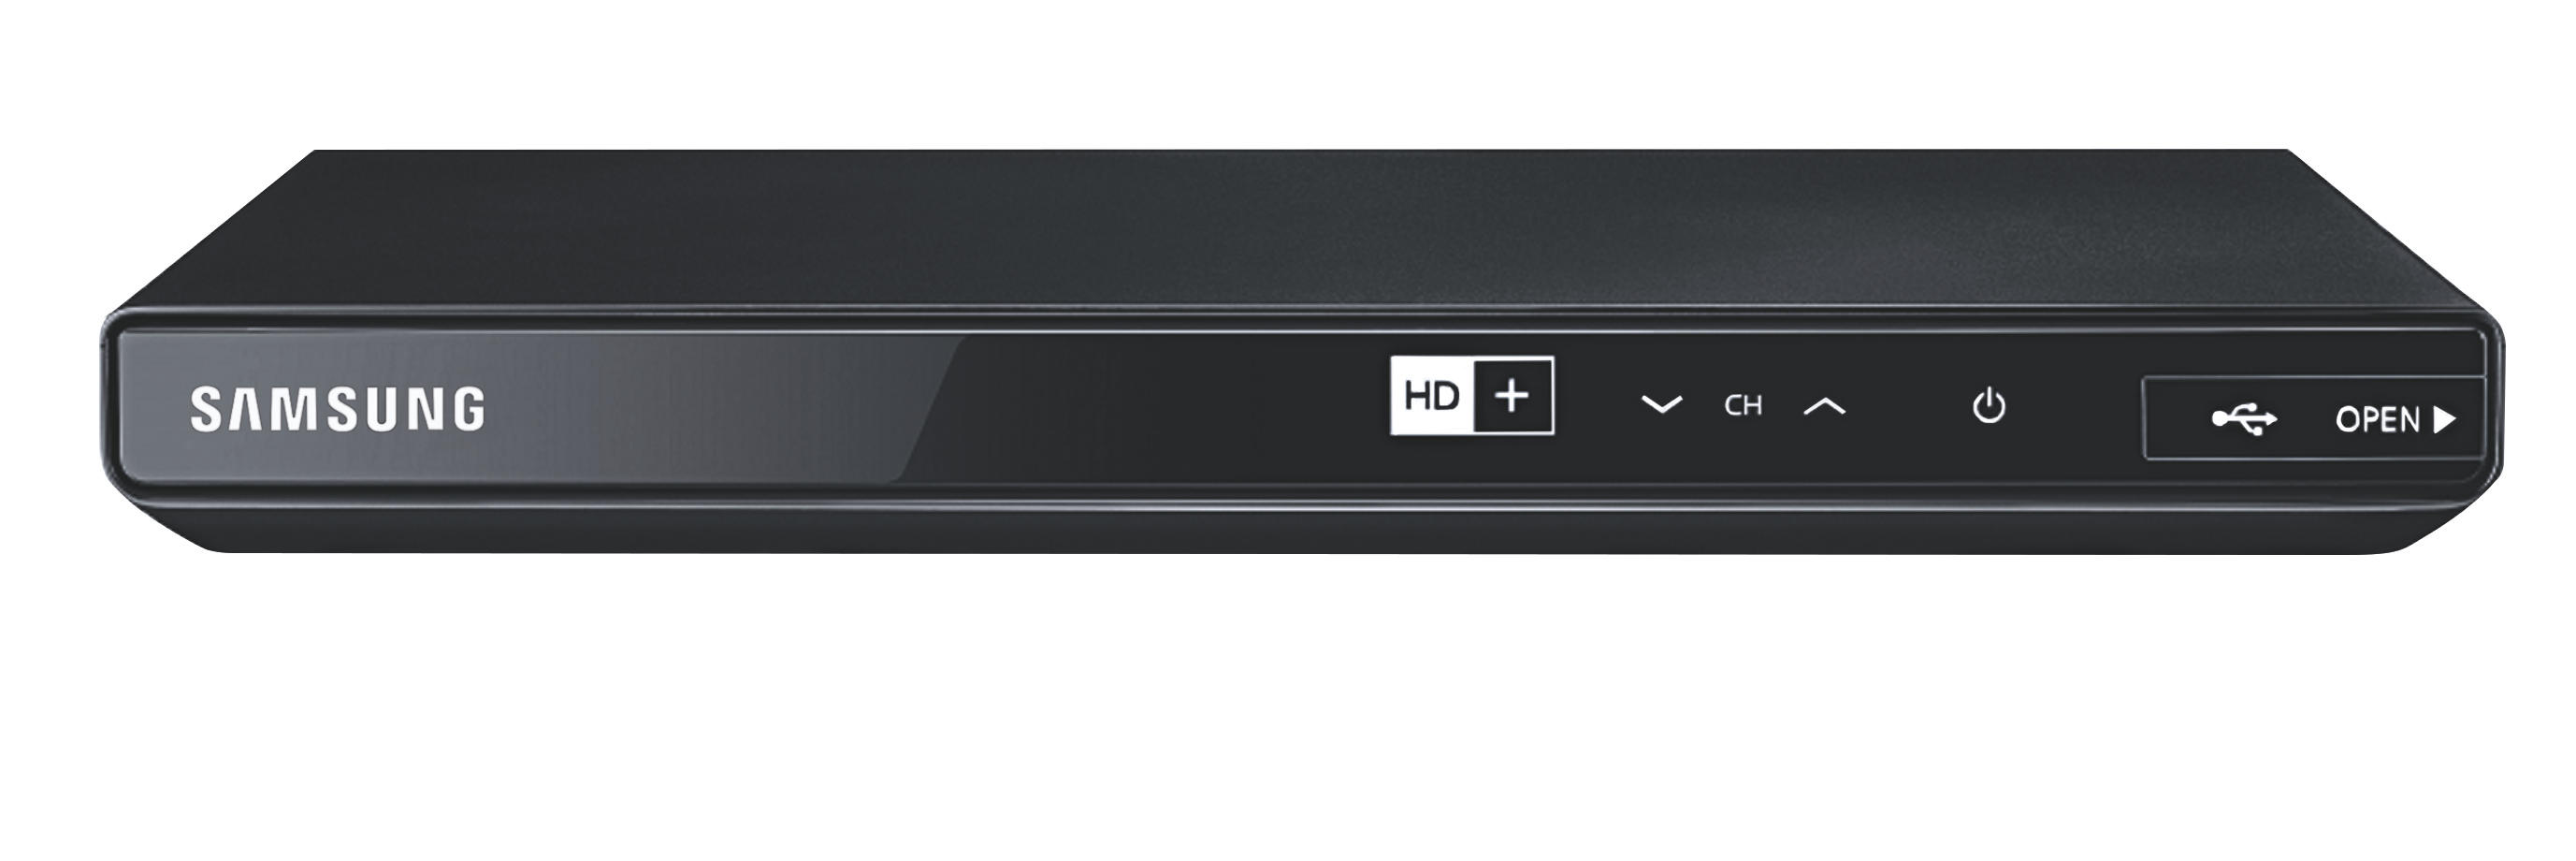 (HDTV, SM Receiver GX-SM DVB-S2 HD+ SAMSUNG DVB-S, Karte 540 inklusive, Schwarz) DVB-S2,